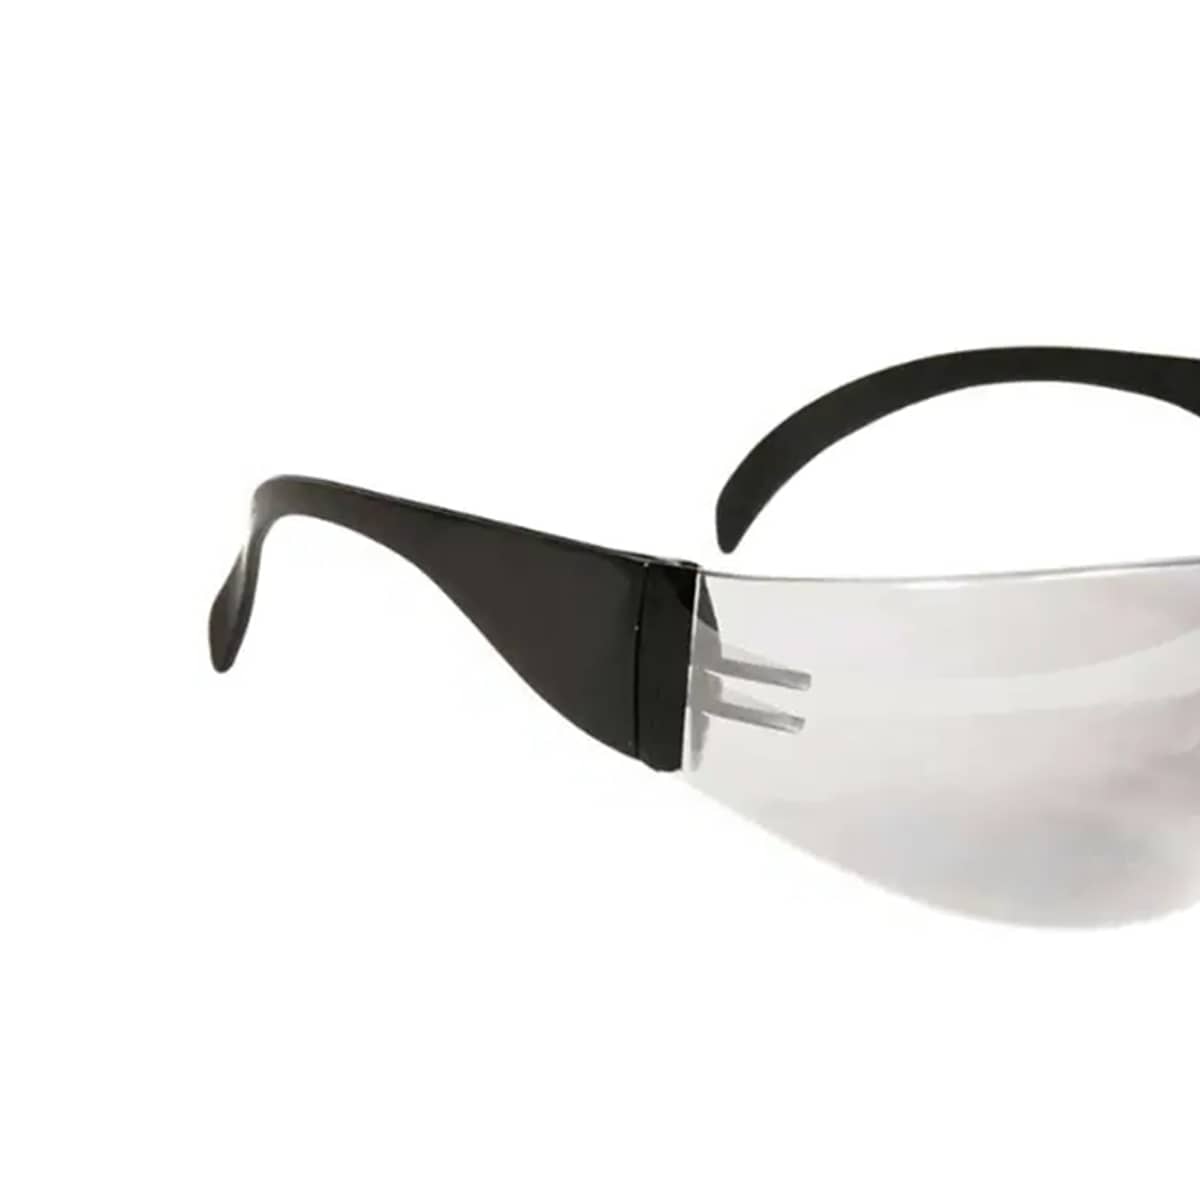 Antiparras Gafas Protectoras Trabajo Seguridad C/elas. X 10u